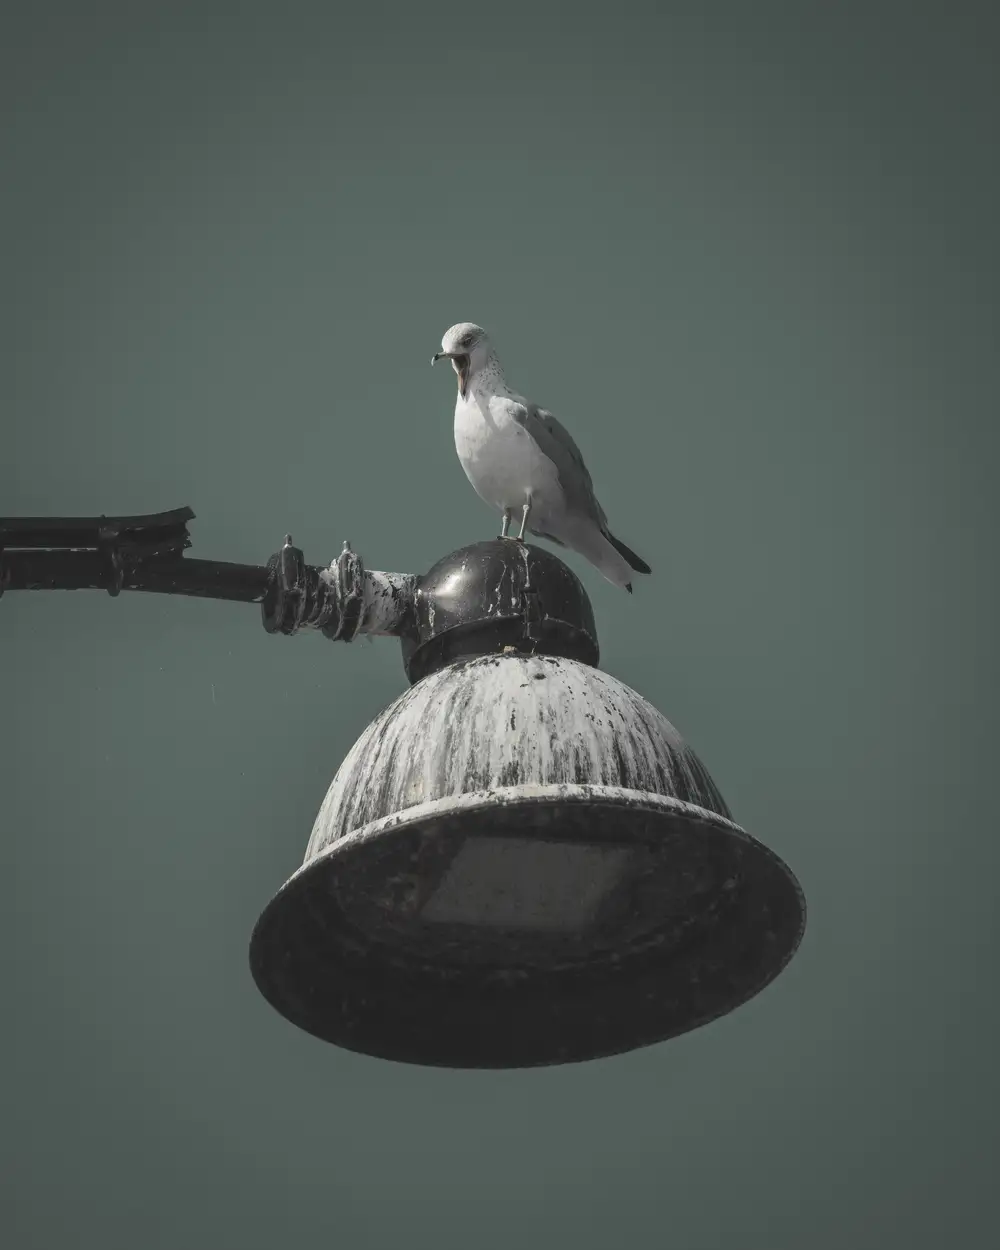 Bird on street lamp